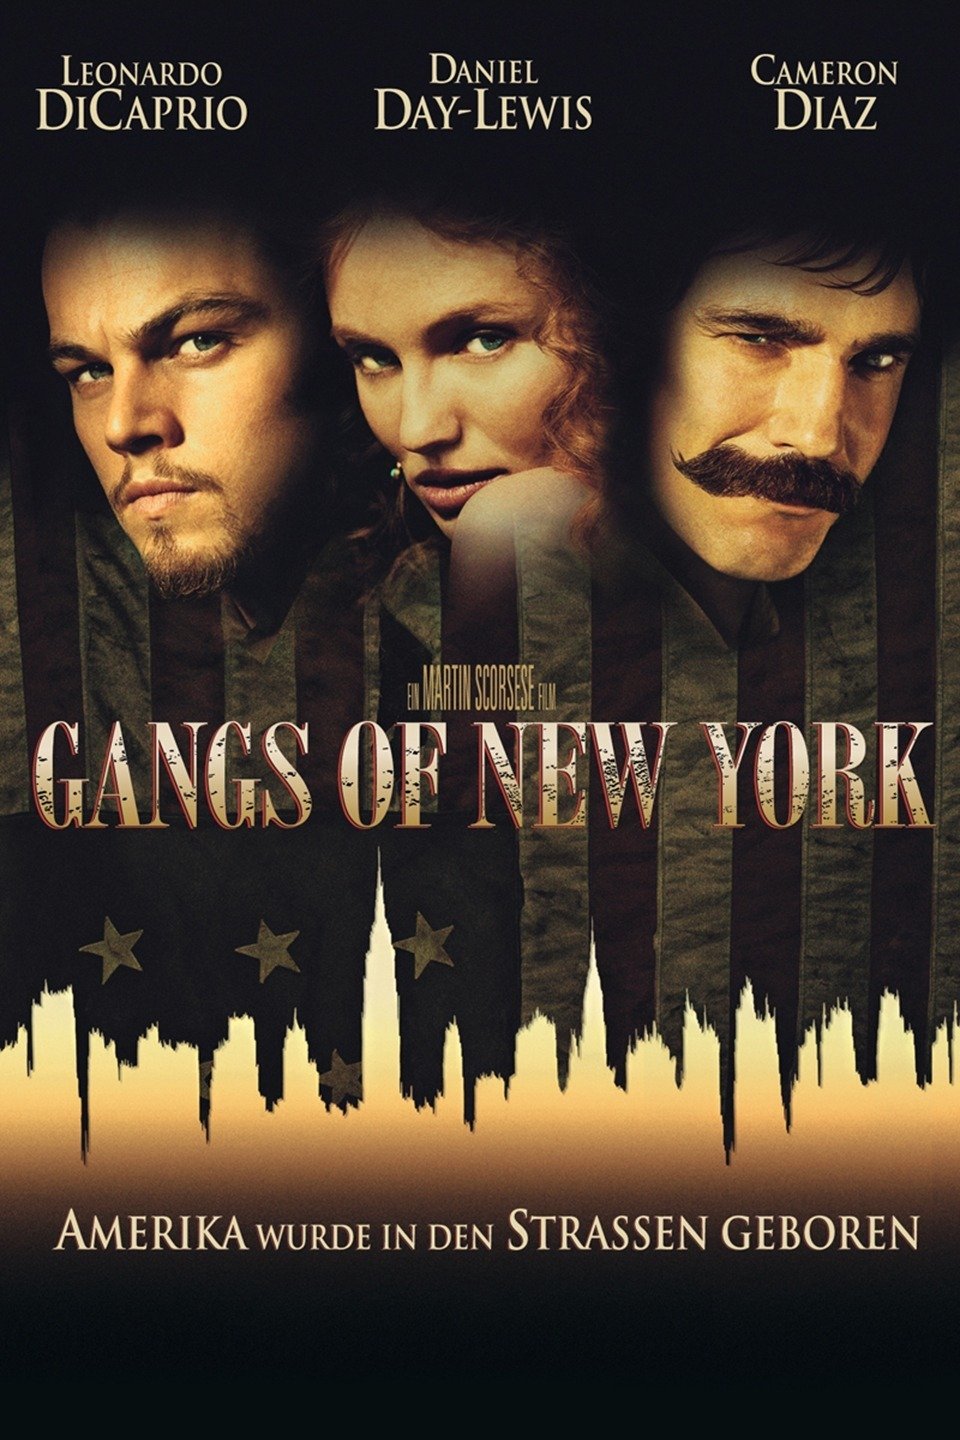 gangs of new york movie reviews